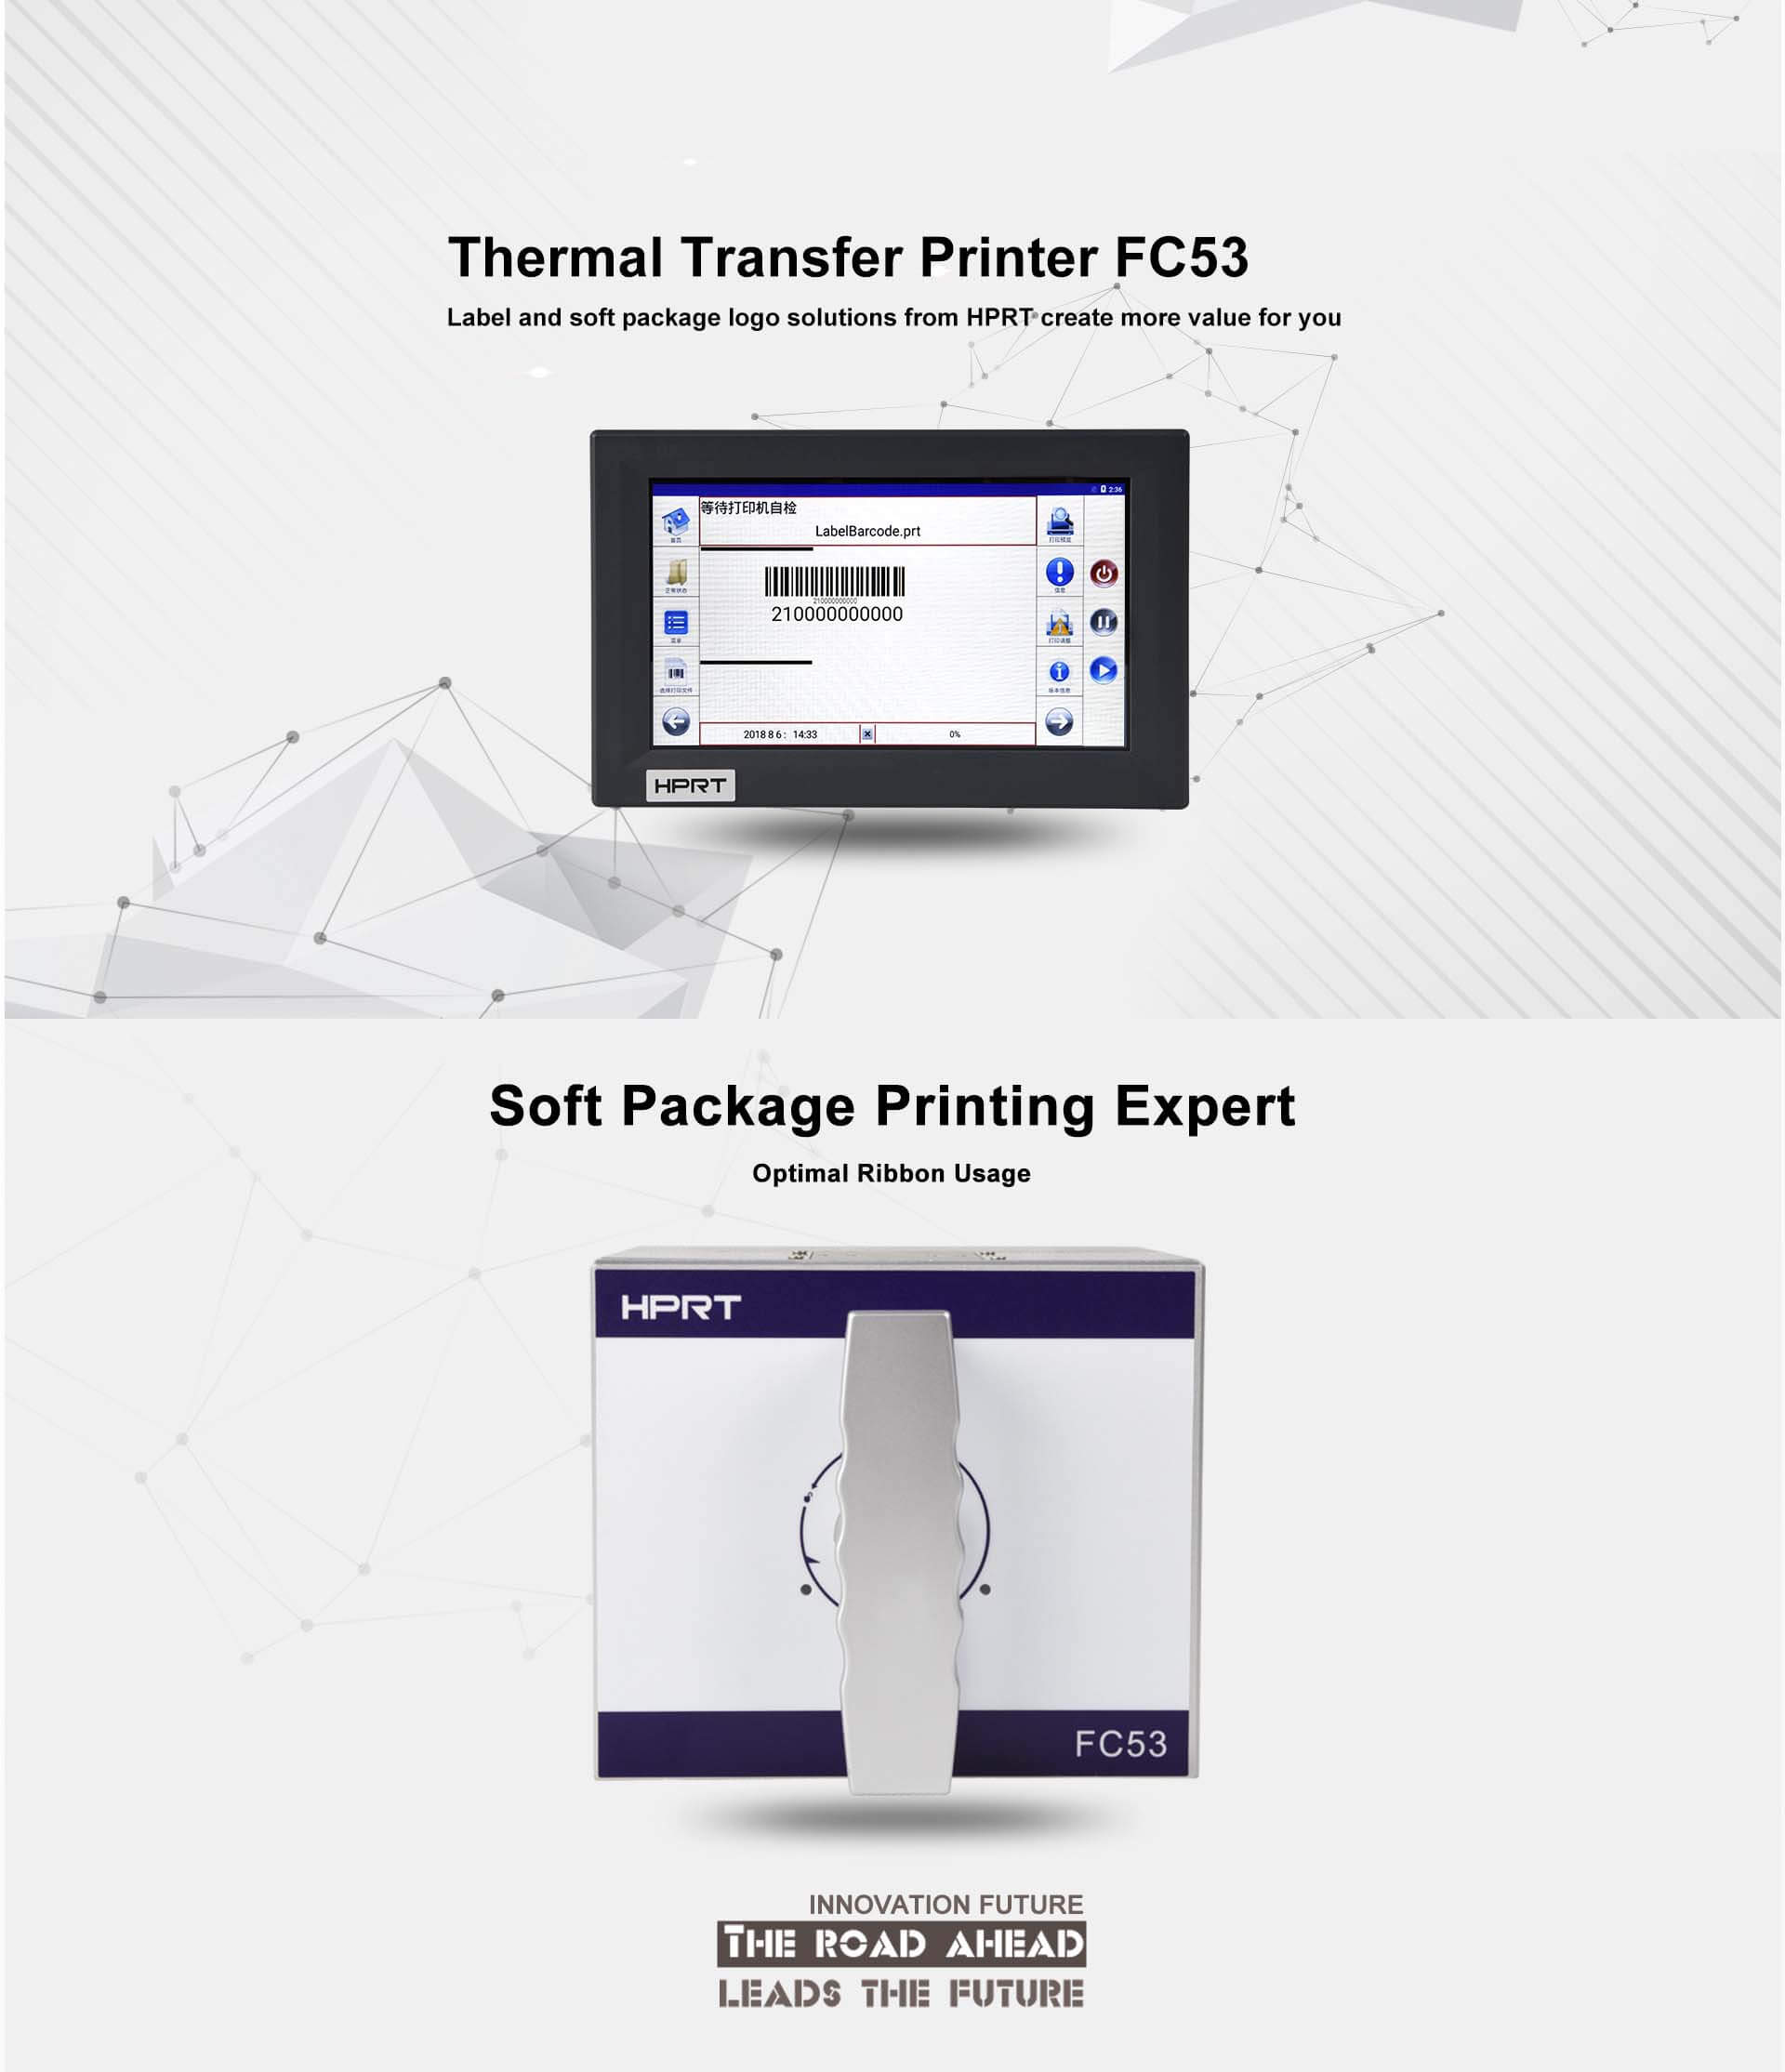 Flexible packaging printing